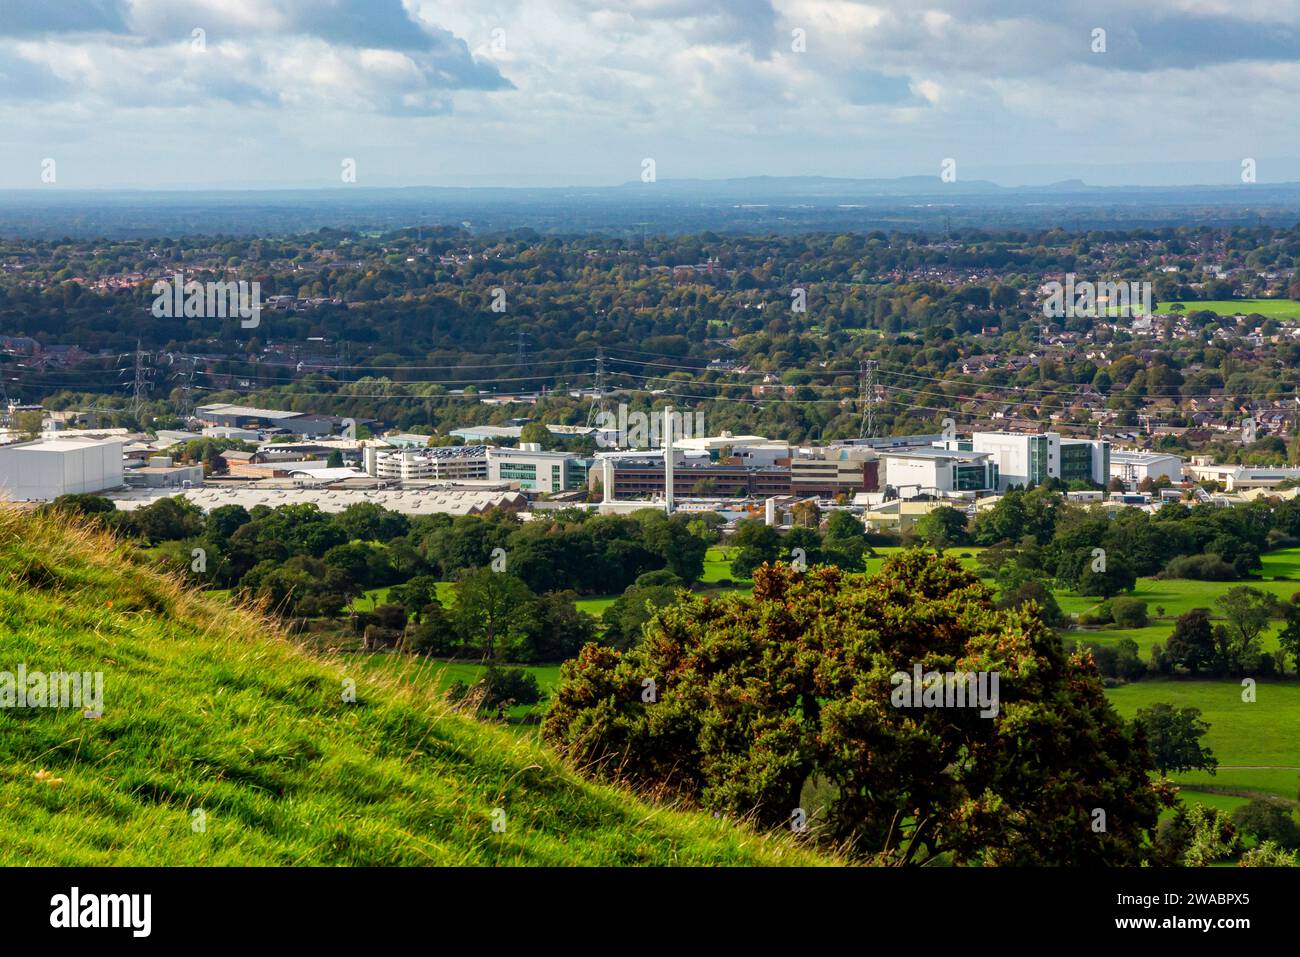 Vista dalla fabbrica Astra Zeneca di Macclesfield, Cheshire, Inghilterra, Regno Unito, con la Cheshire Plain visibile in lontananza. Foto Stock